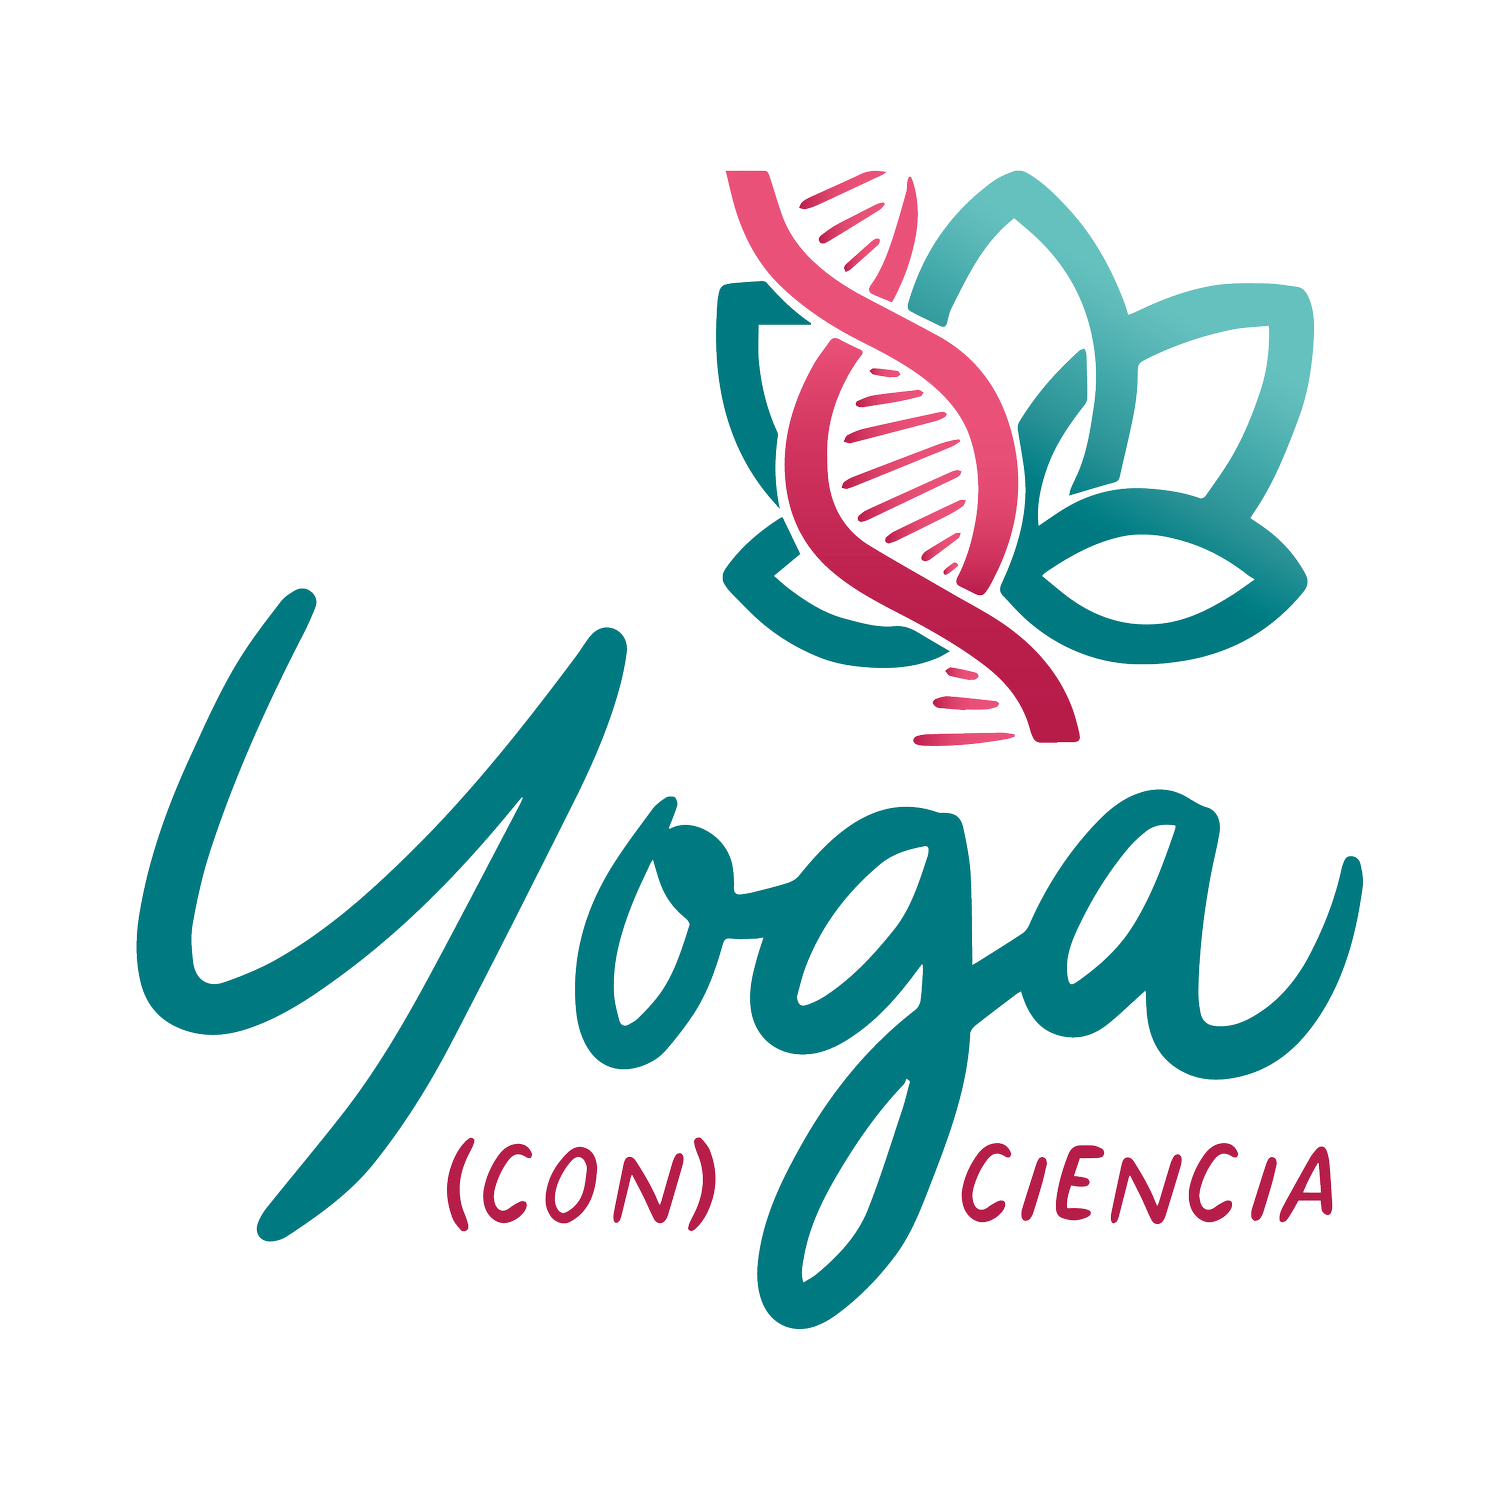 Images Yoga (con) Ciencia